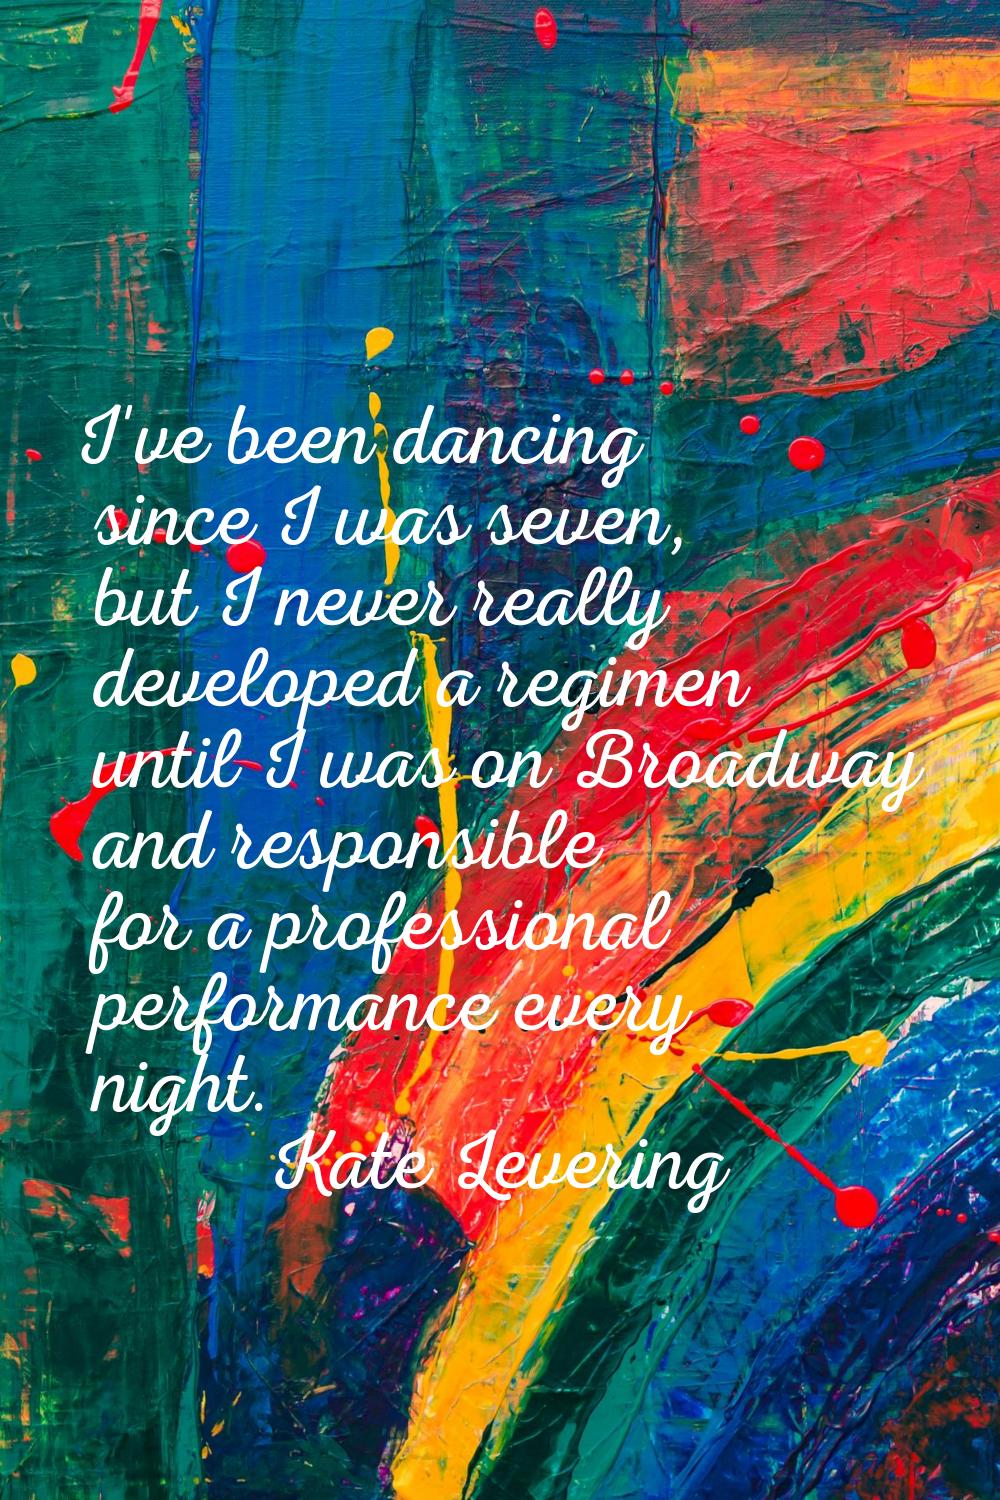 I've been dancing since I was seven, but I never really developed a regimen until I was on Broadway